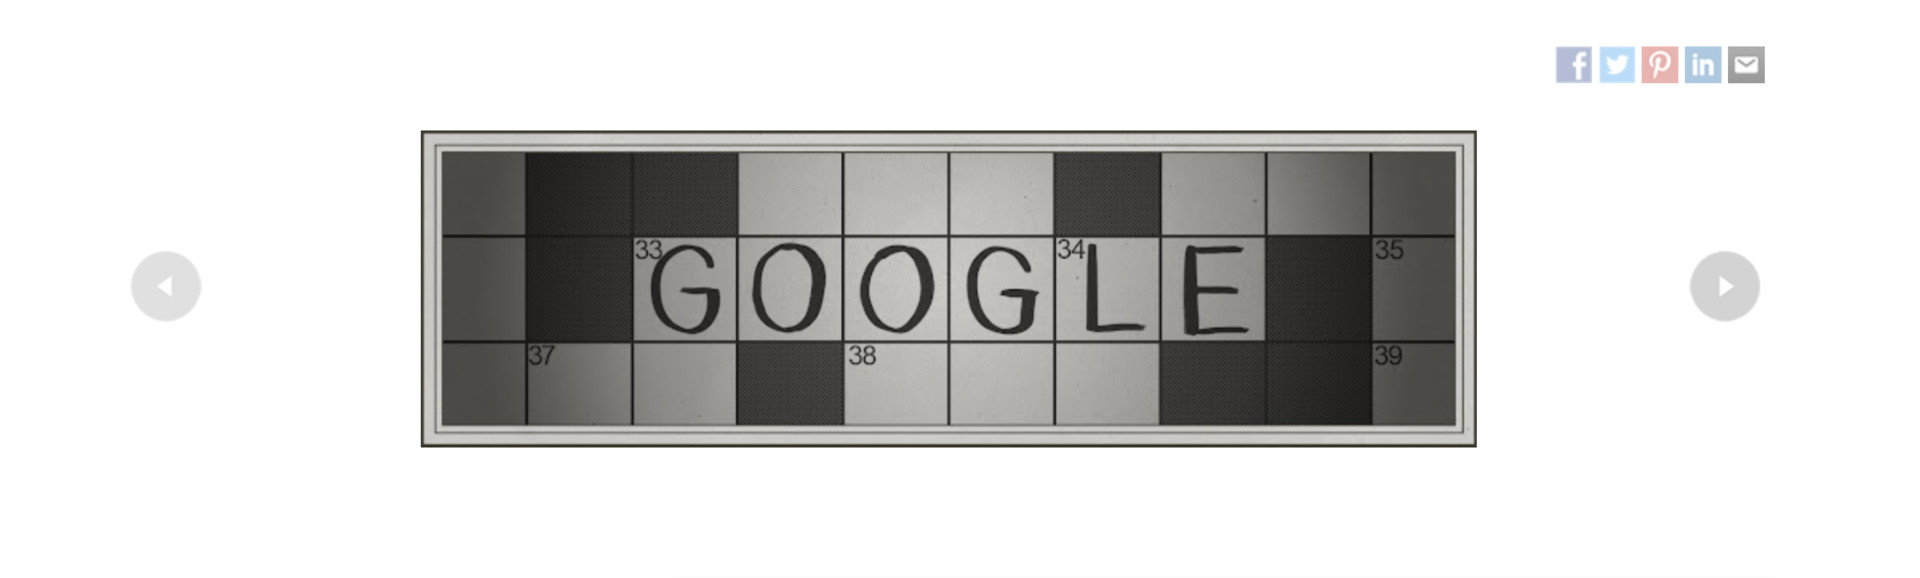 google doodle crossword anniversary